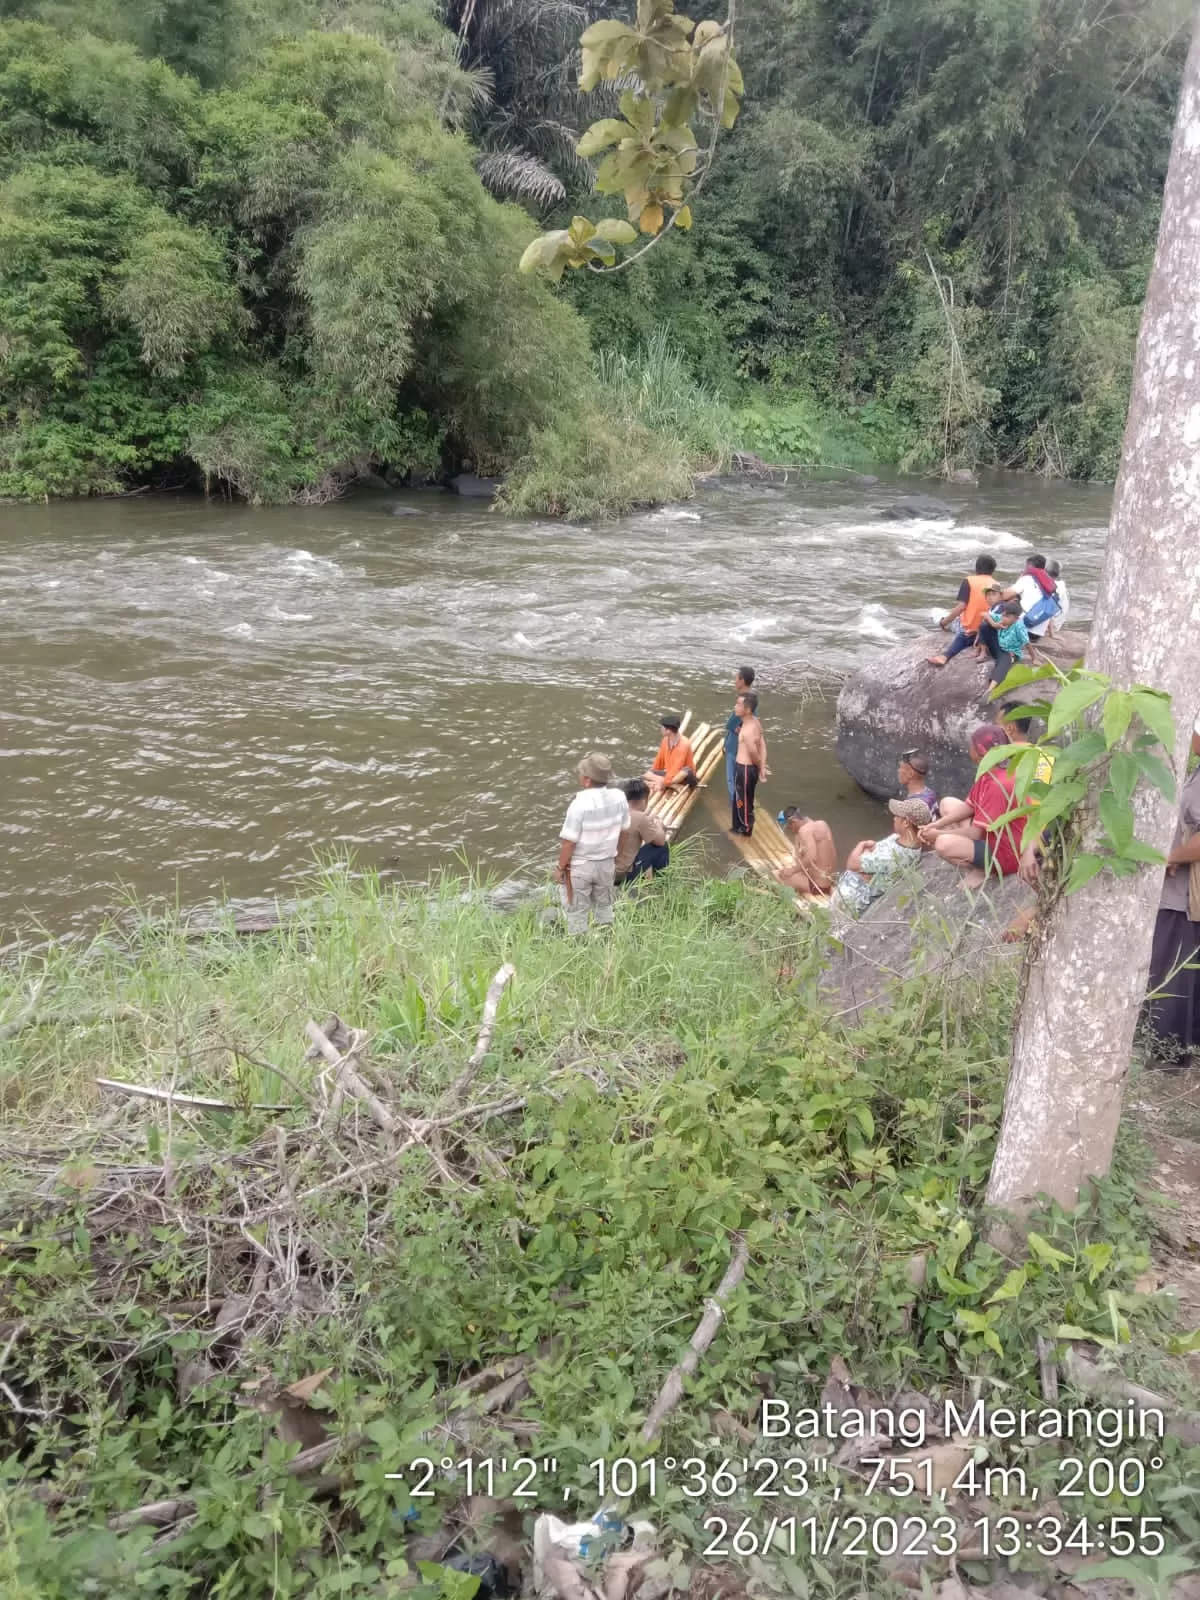 Seorang Warga Batang Merangin Loncat ke Sungai Karena Di Serang Tawon